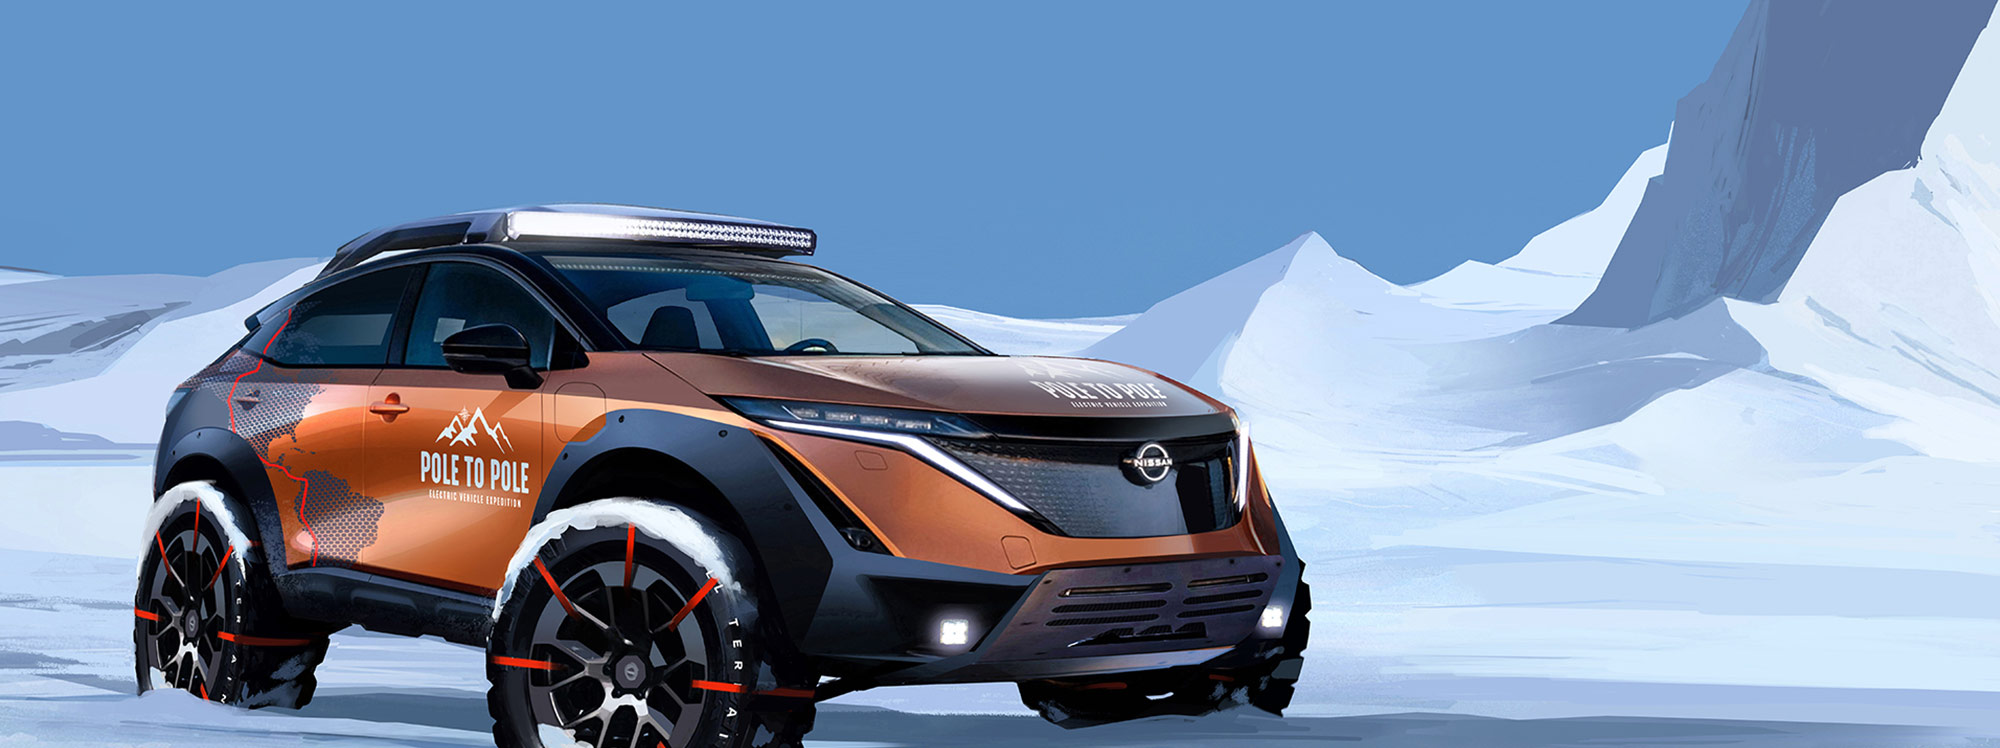 Nissan Ariya se embarcará en la primera expedición mundial de Polo Norte a Sur